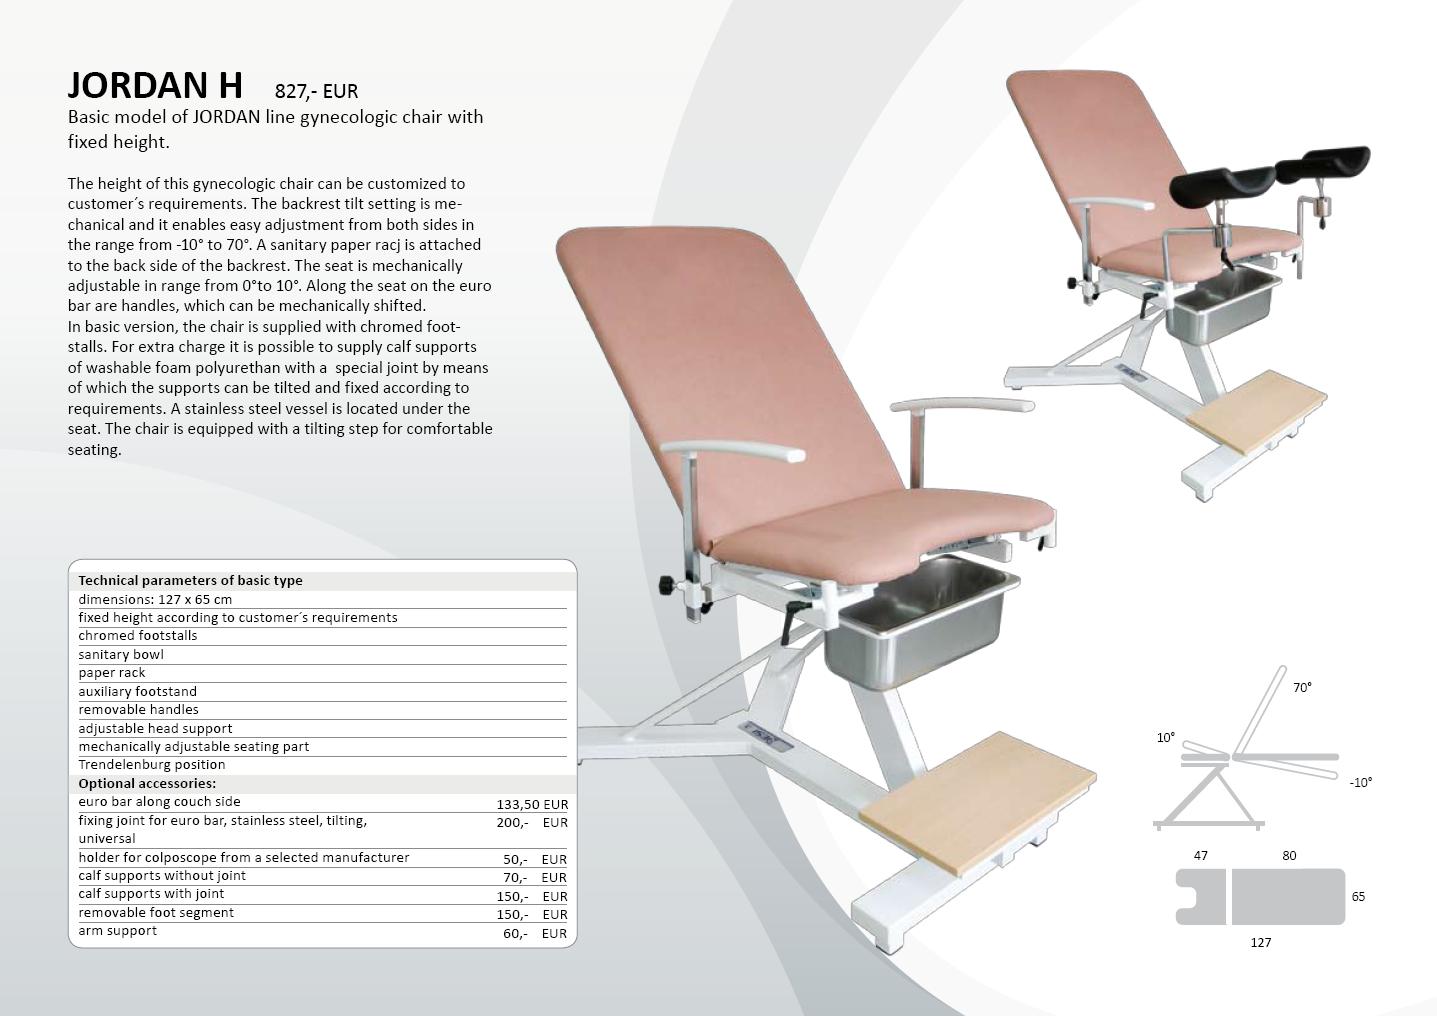 JORDAN H Model podstawowy linii foteli ginekologicznych JORDAN z nieregulowaną wysokością. Wysokośd tego fotela ginekologicznego może zostad dostosowana do potrzeb i wymagao klienta.